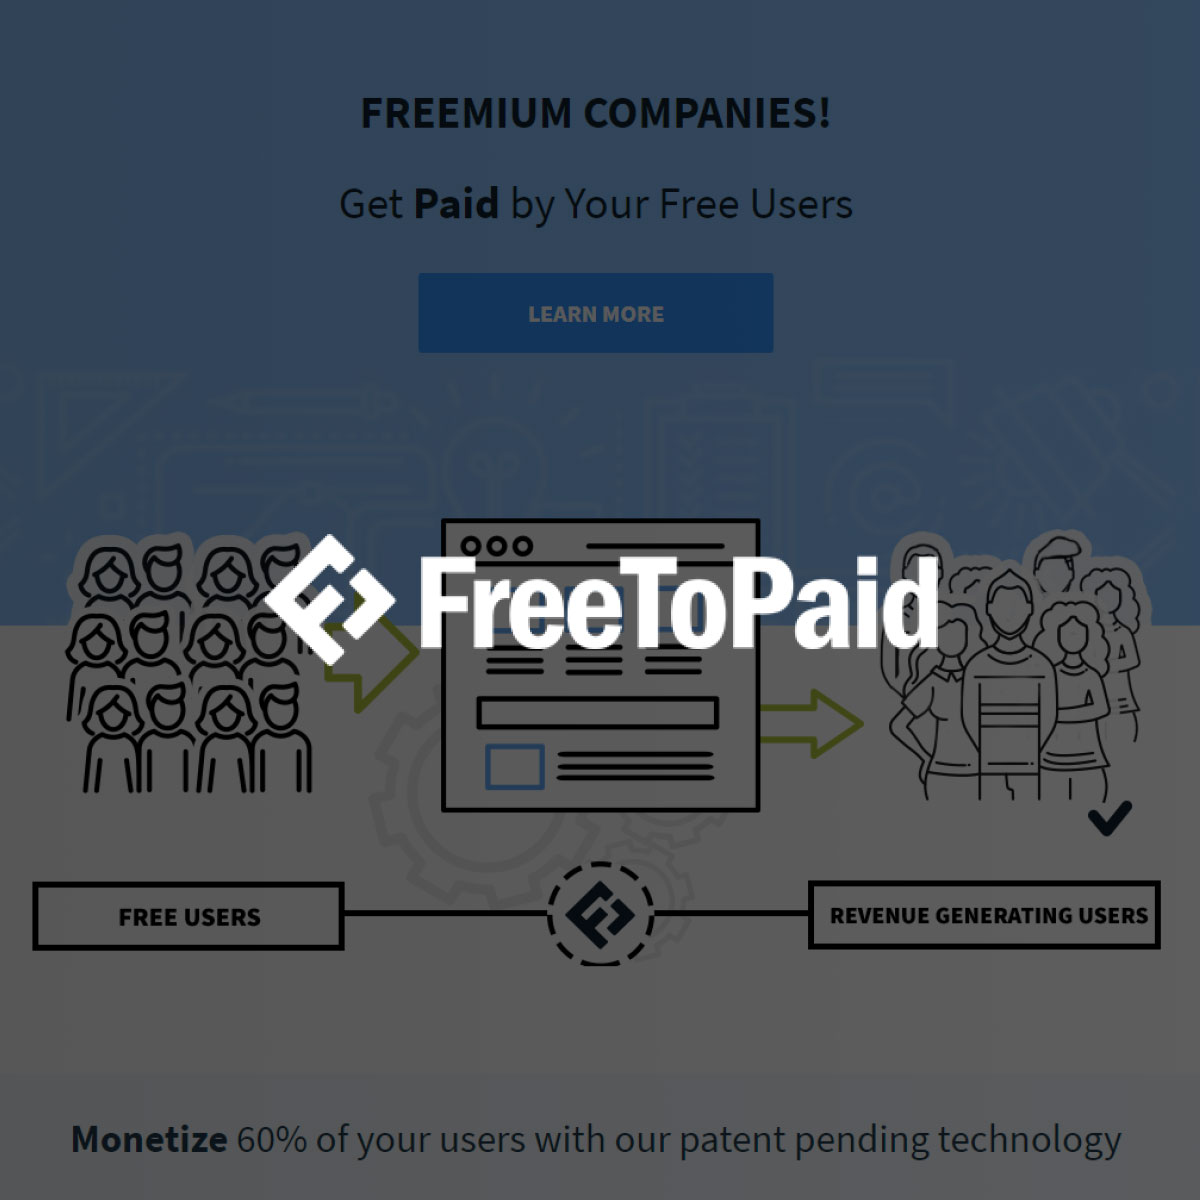 FreeToPaid Branding & Website Design | PixelChefs